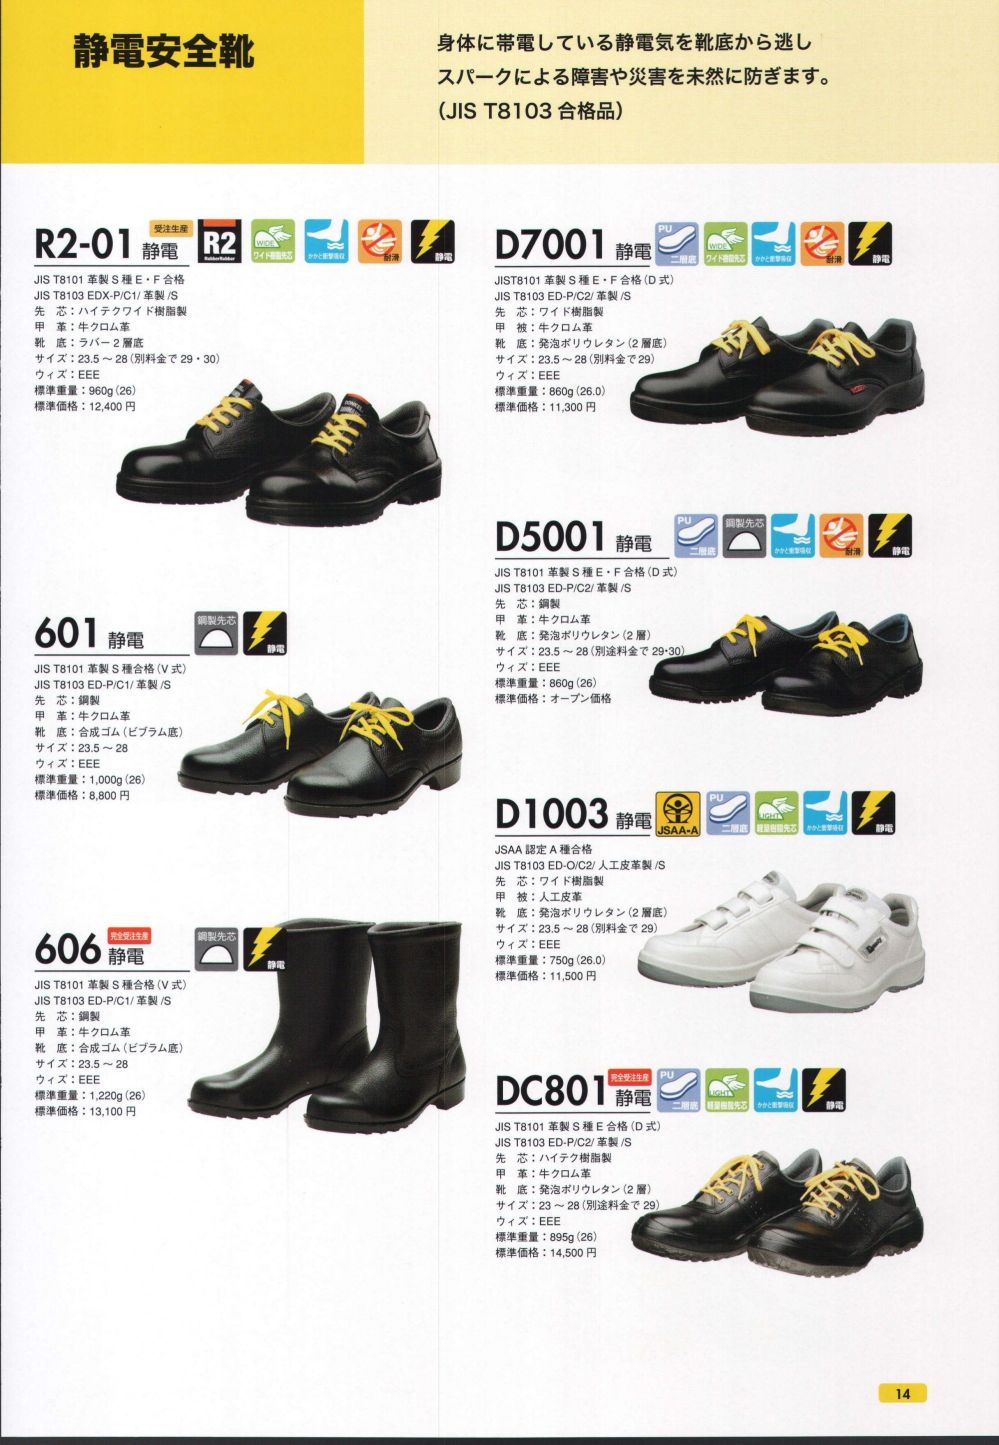 ドンケル DONKEL DSF-02 鋼製先芯 マジック式 短靴 安全靴 デサフィオ JPSA規格 作業靴 A種 反射材 男女兼用